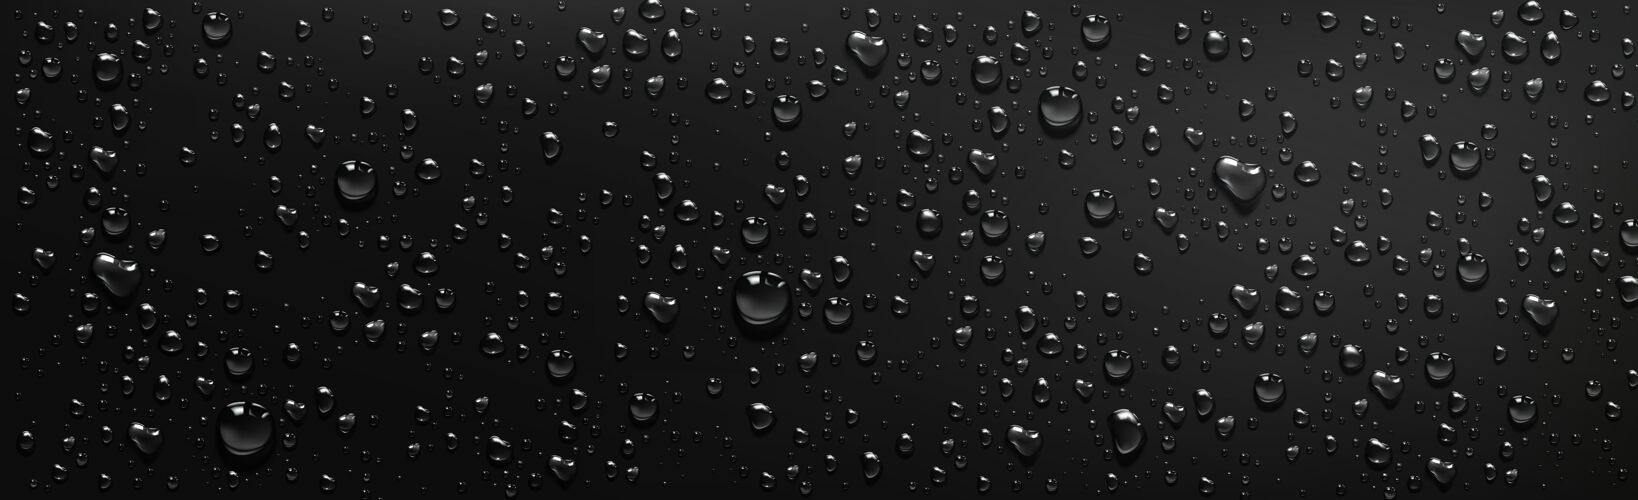 真实黑色背景上的水滴雨淋或雾中蒸汽凝结在湿黑色表面上的矢量写实插图 露水或雨水中的透明水滴露滴水窗户